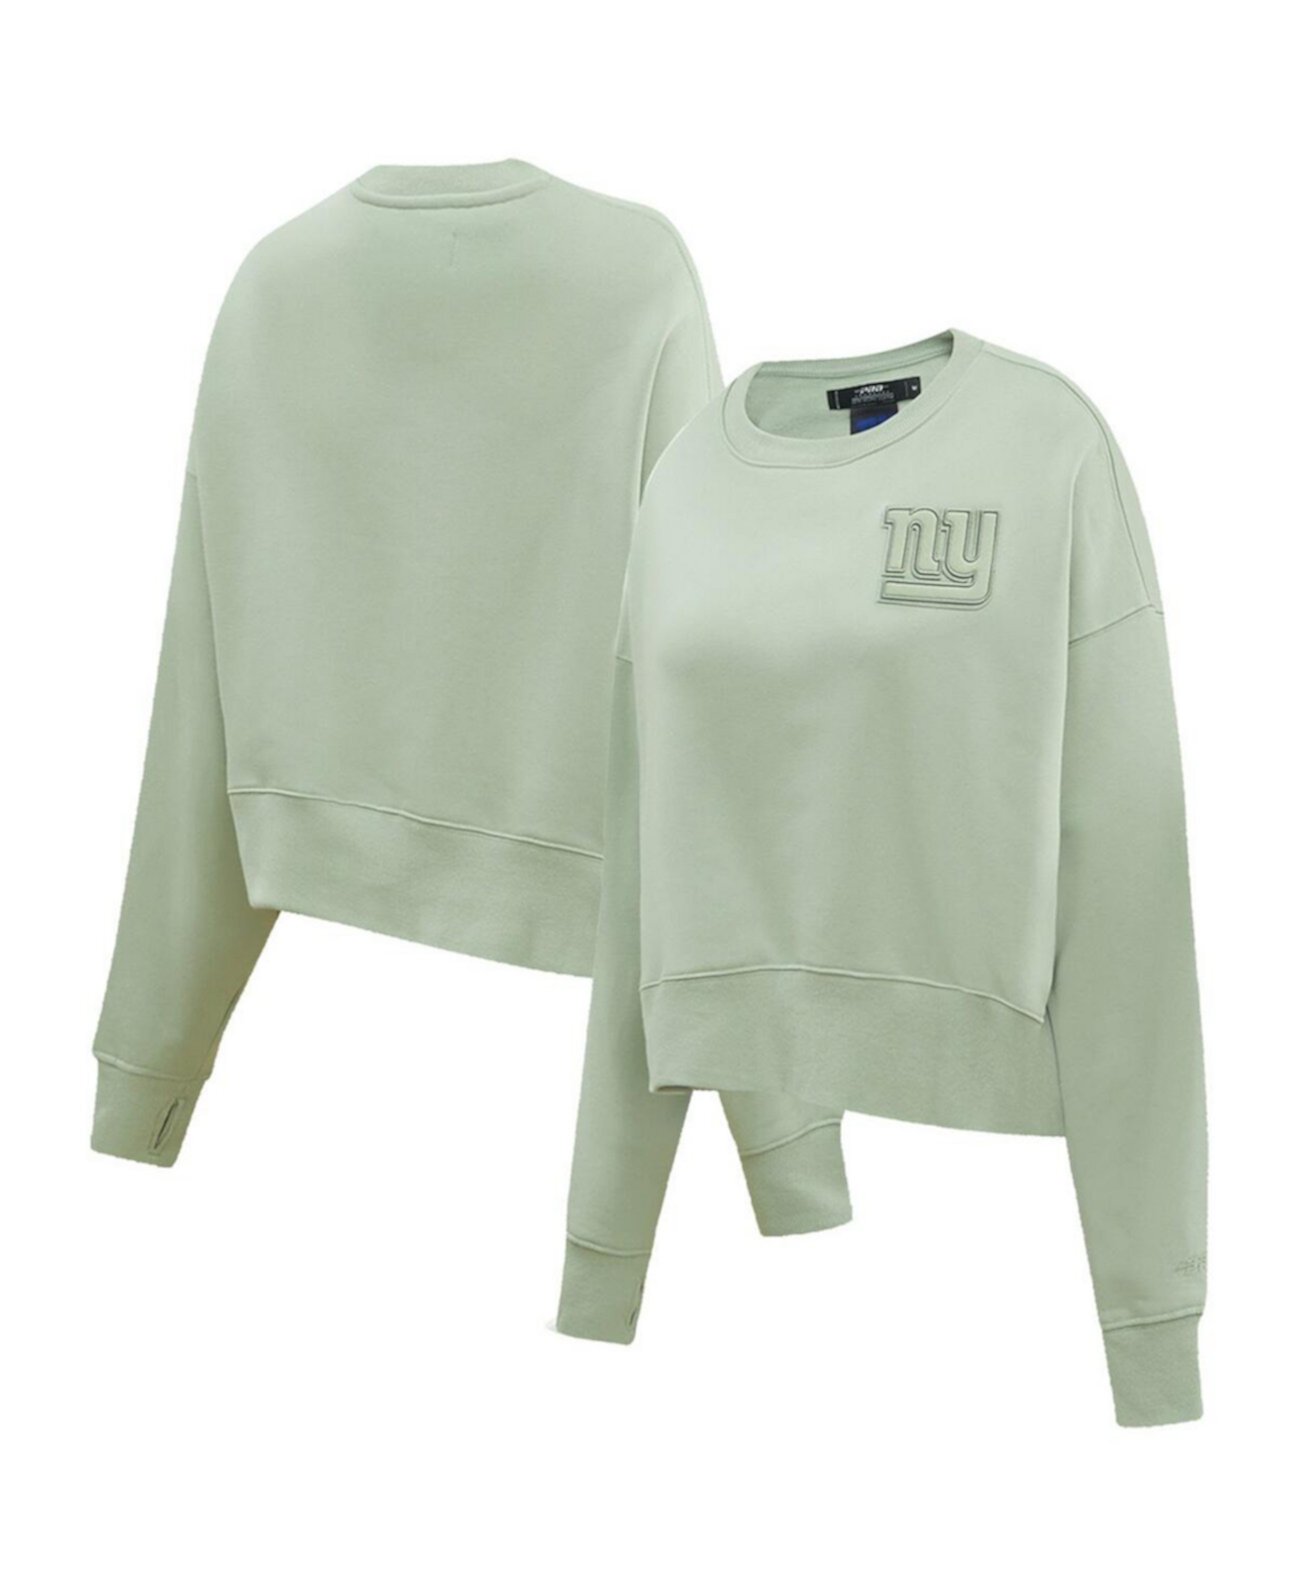 Зеленый женский пуловер нейтрального цвета New York Giants Pro Standard